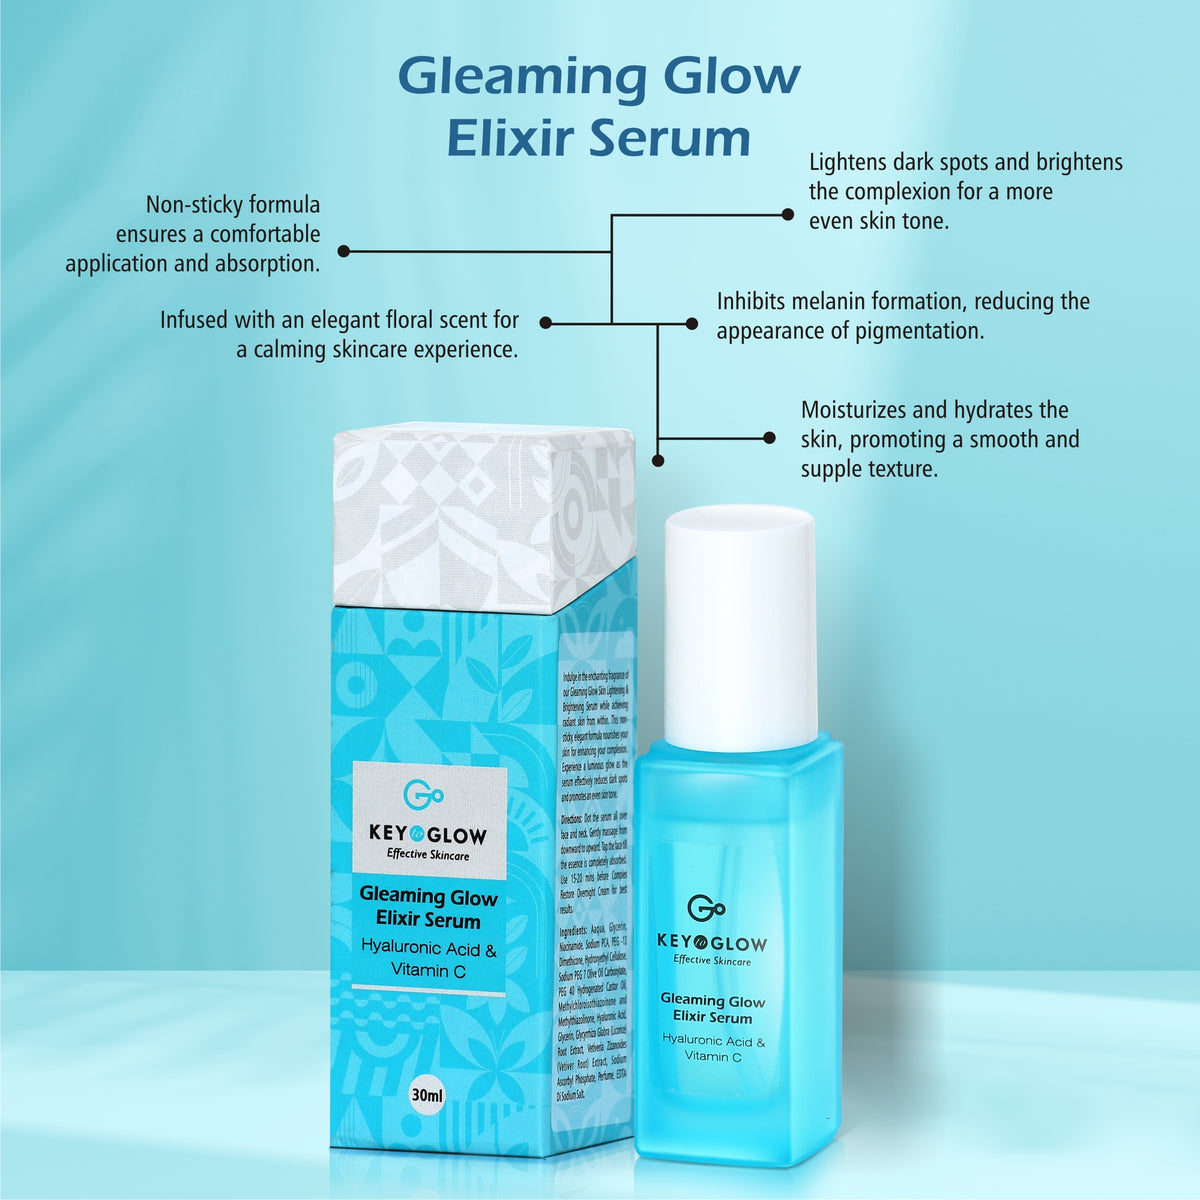 Gleaming Glow Elixir Serum Hyaluronic Acid + Vitamin C - 30ml - Key to Glow 